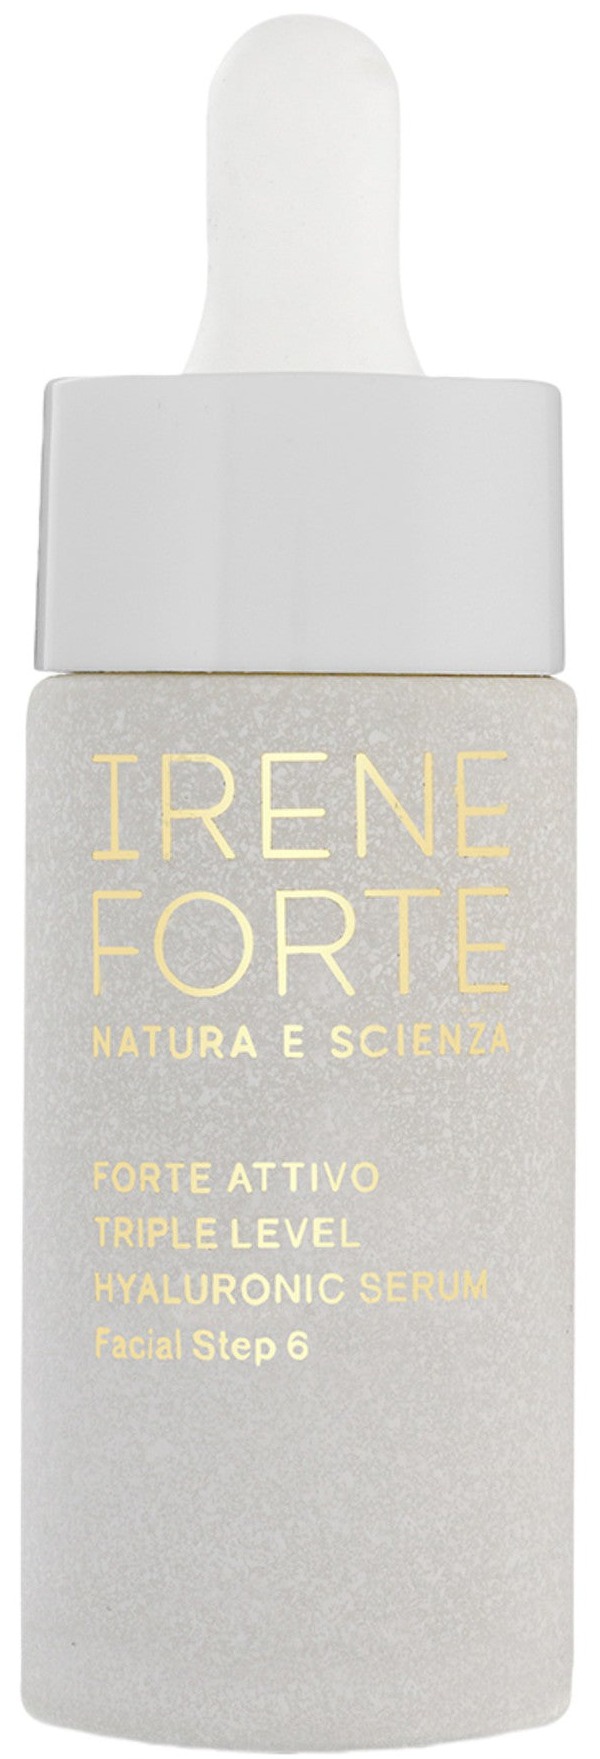 Irene Forte Triple Level Hyaluronic Serum